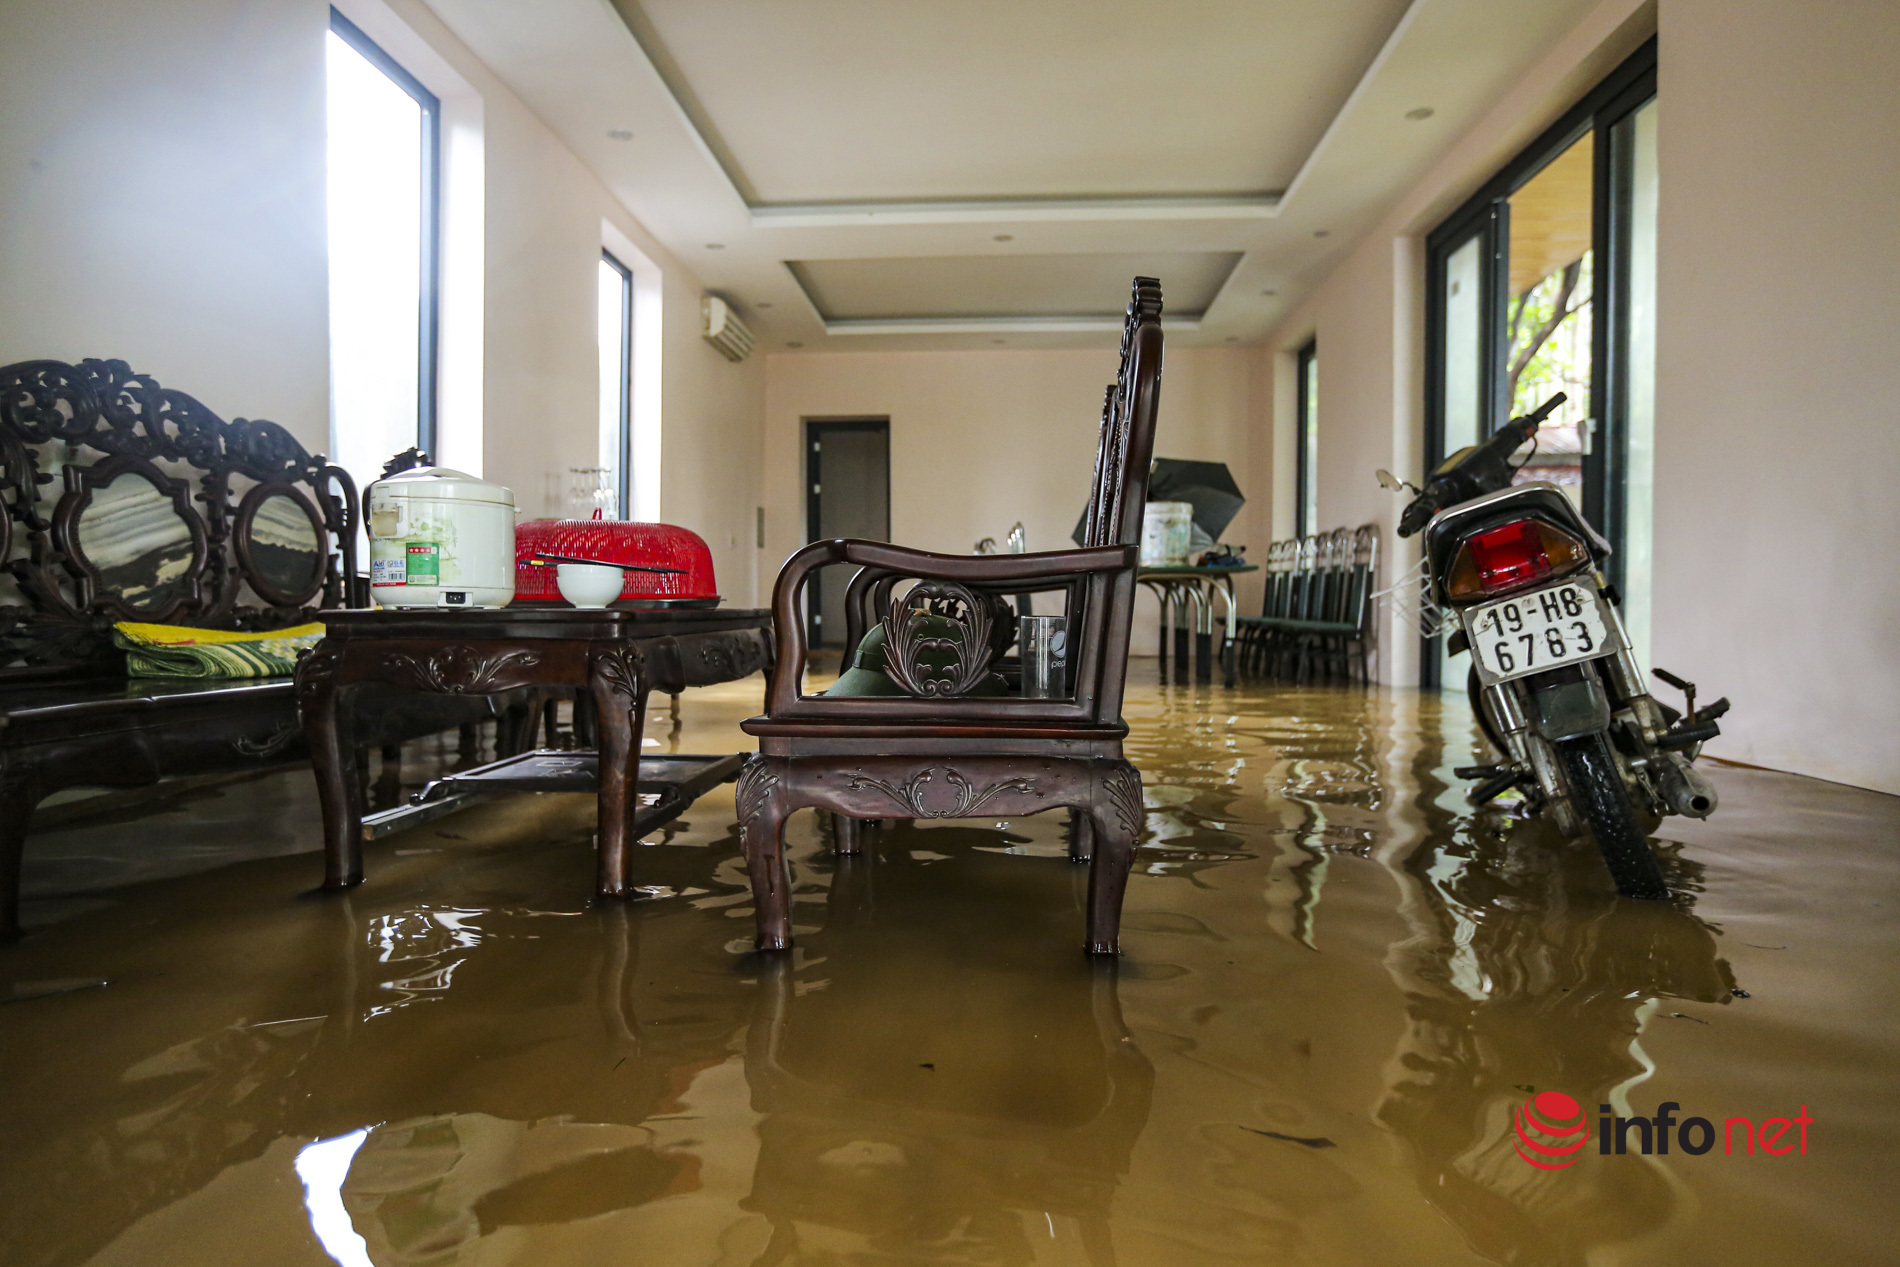 Nước sông lên cao, hàng chục hộ dân ở ngoại ô Hà Nội hối hả 'chạy lụt'